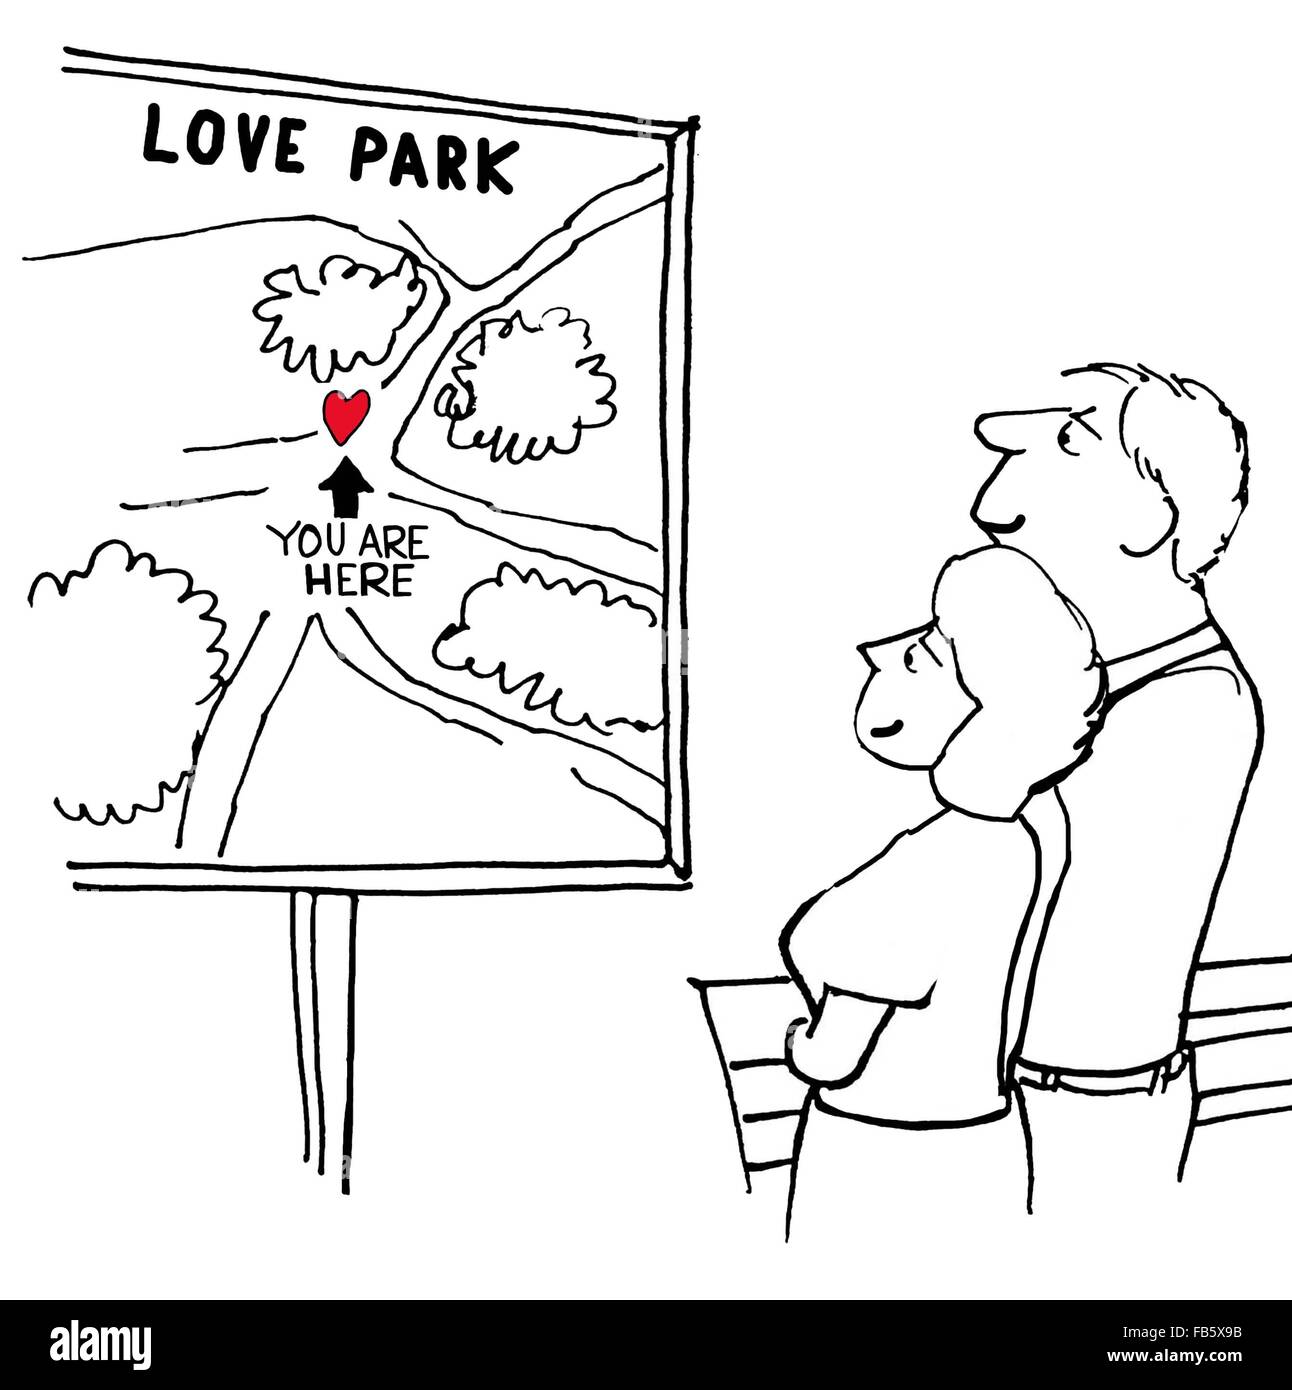 Valentinstag Cartoon.  Sie sind zusammen im Love Park. Stockfoto